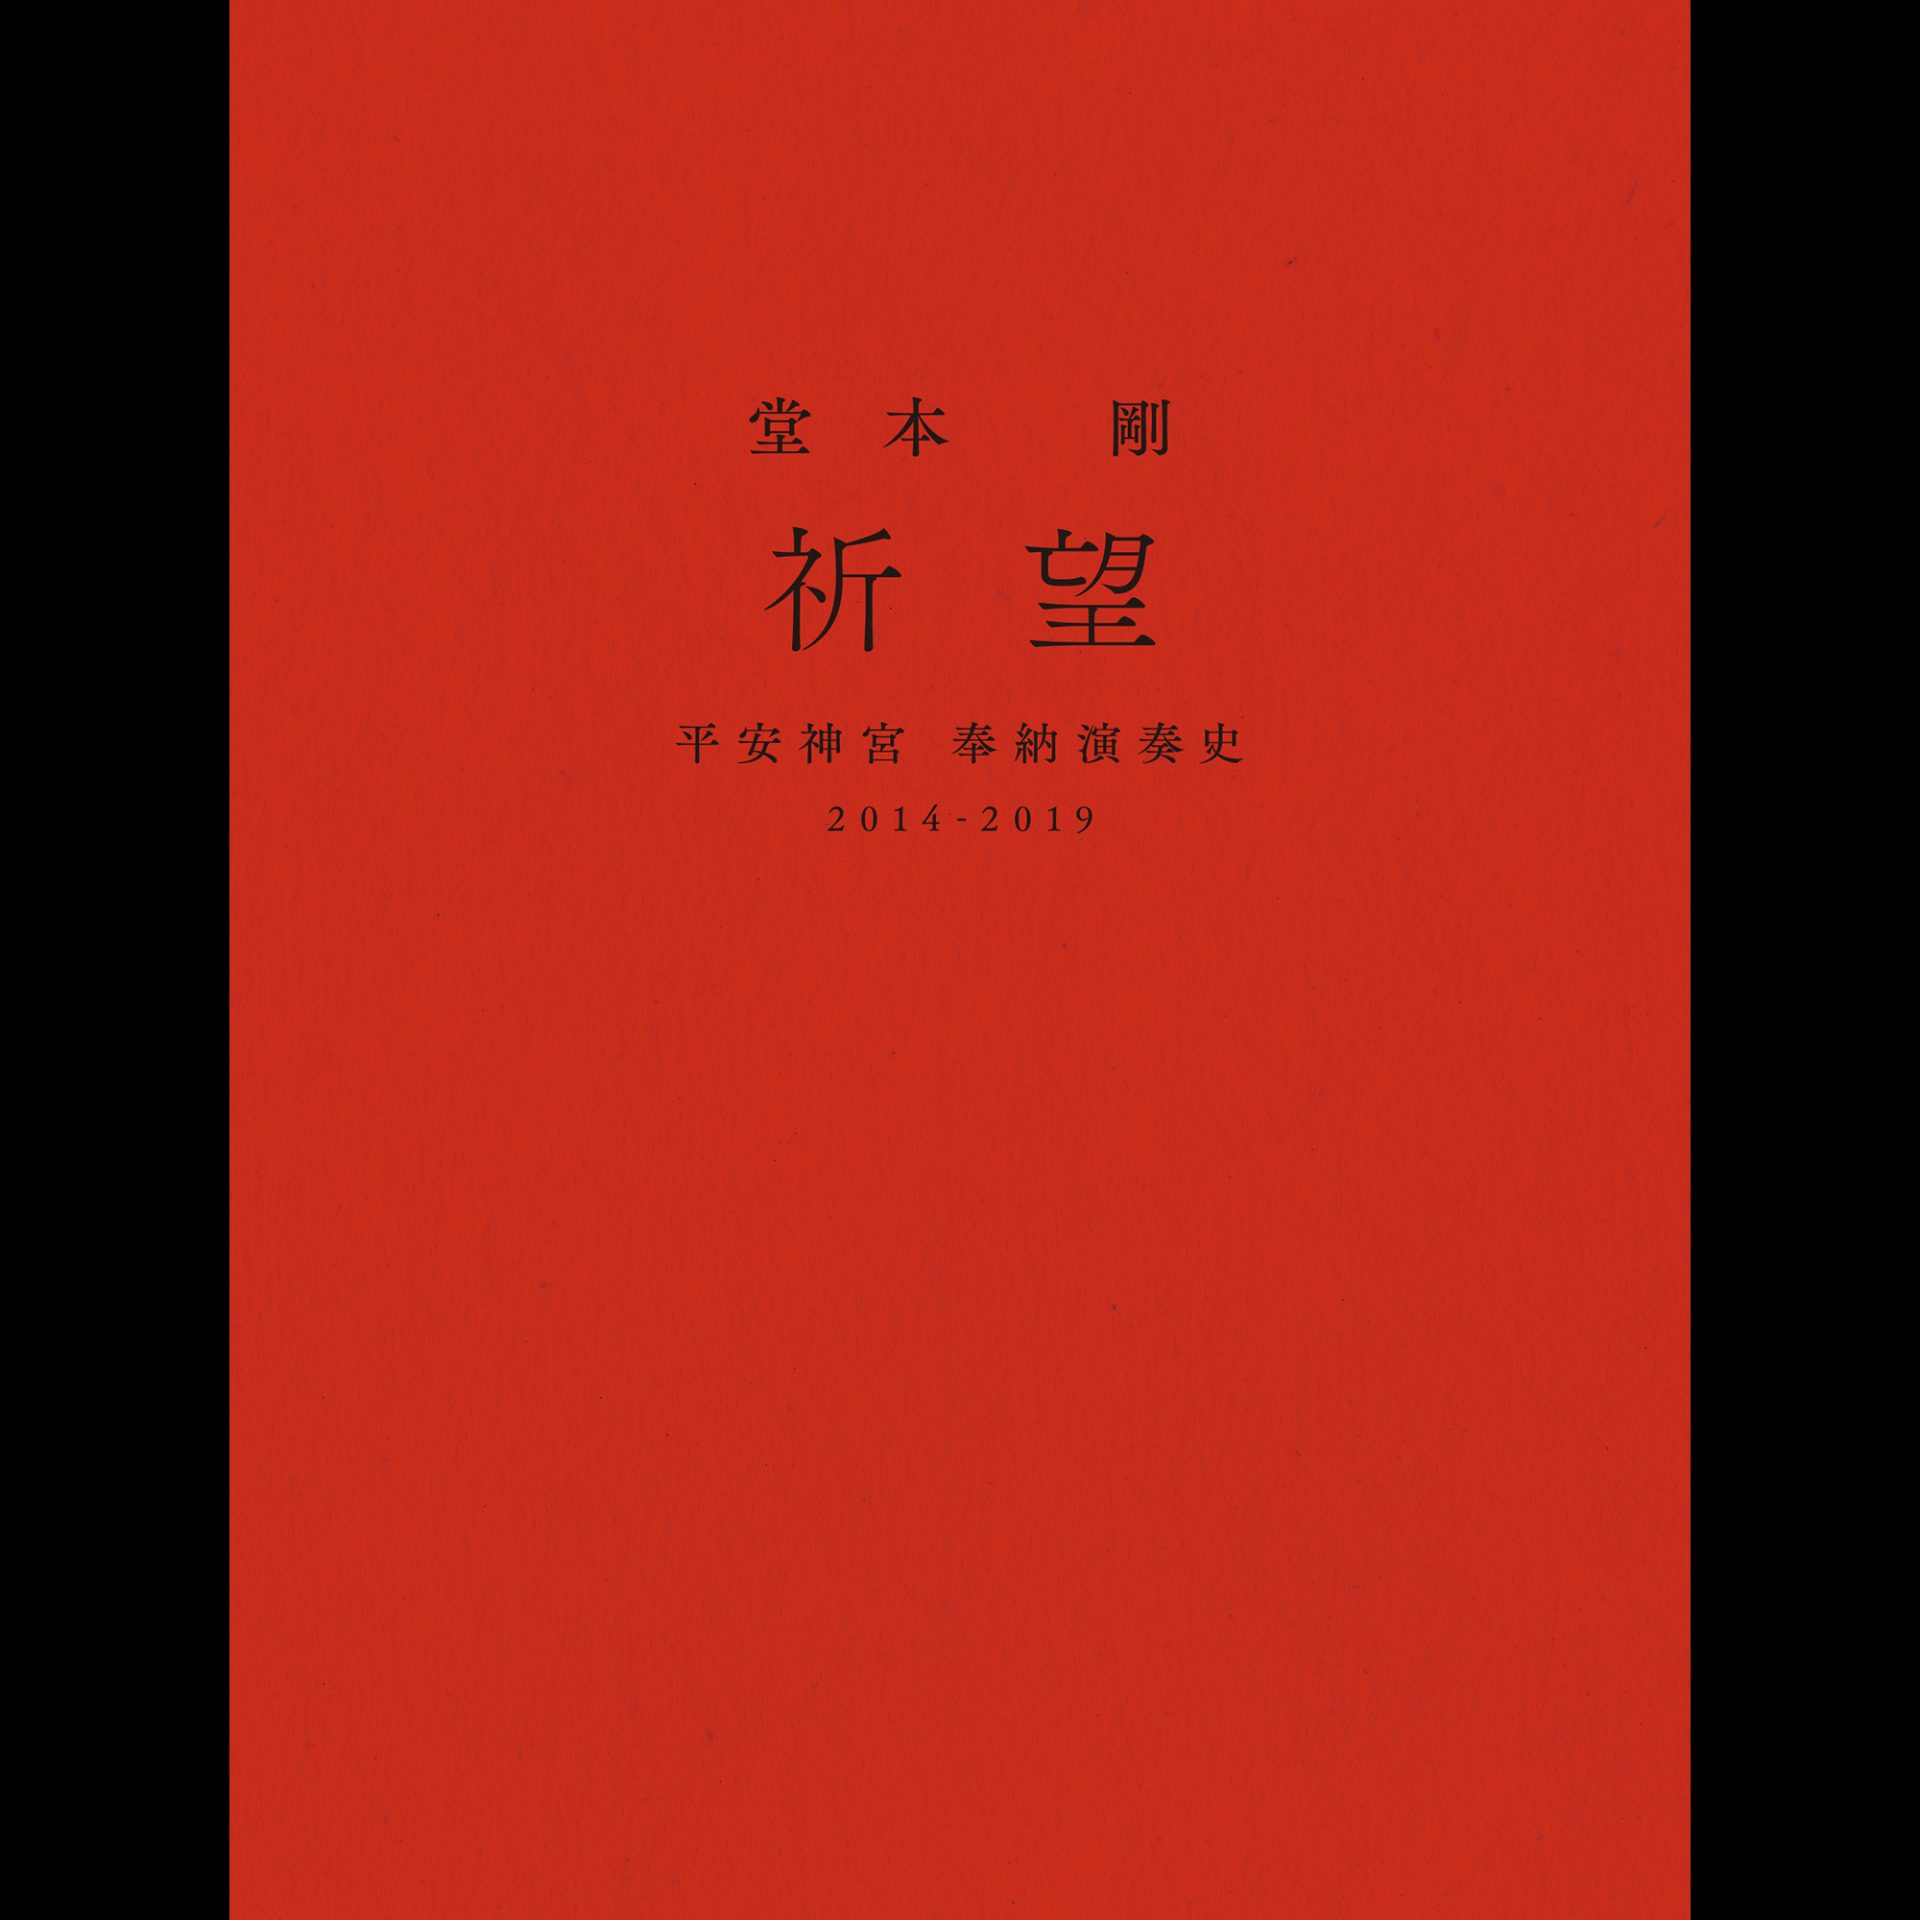 堂本剛 祈望 平安神宮 奉納演奏史 2014-2019 Blu-ray www